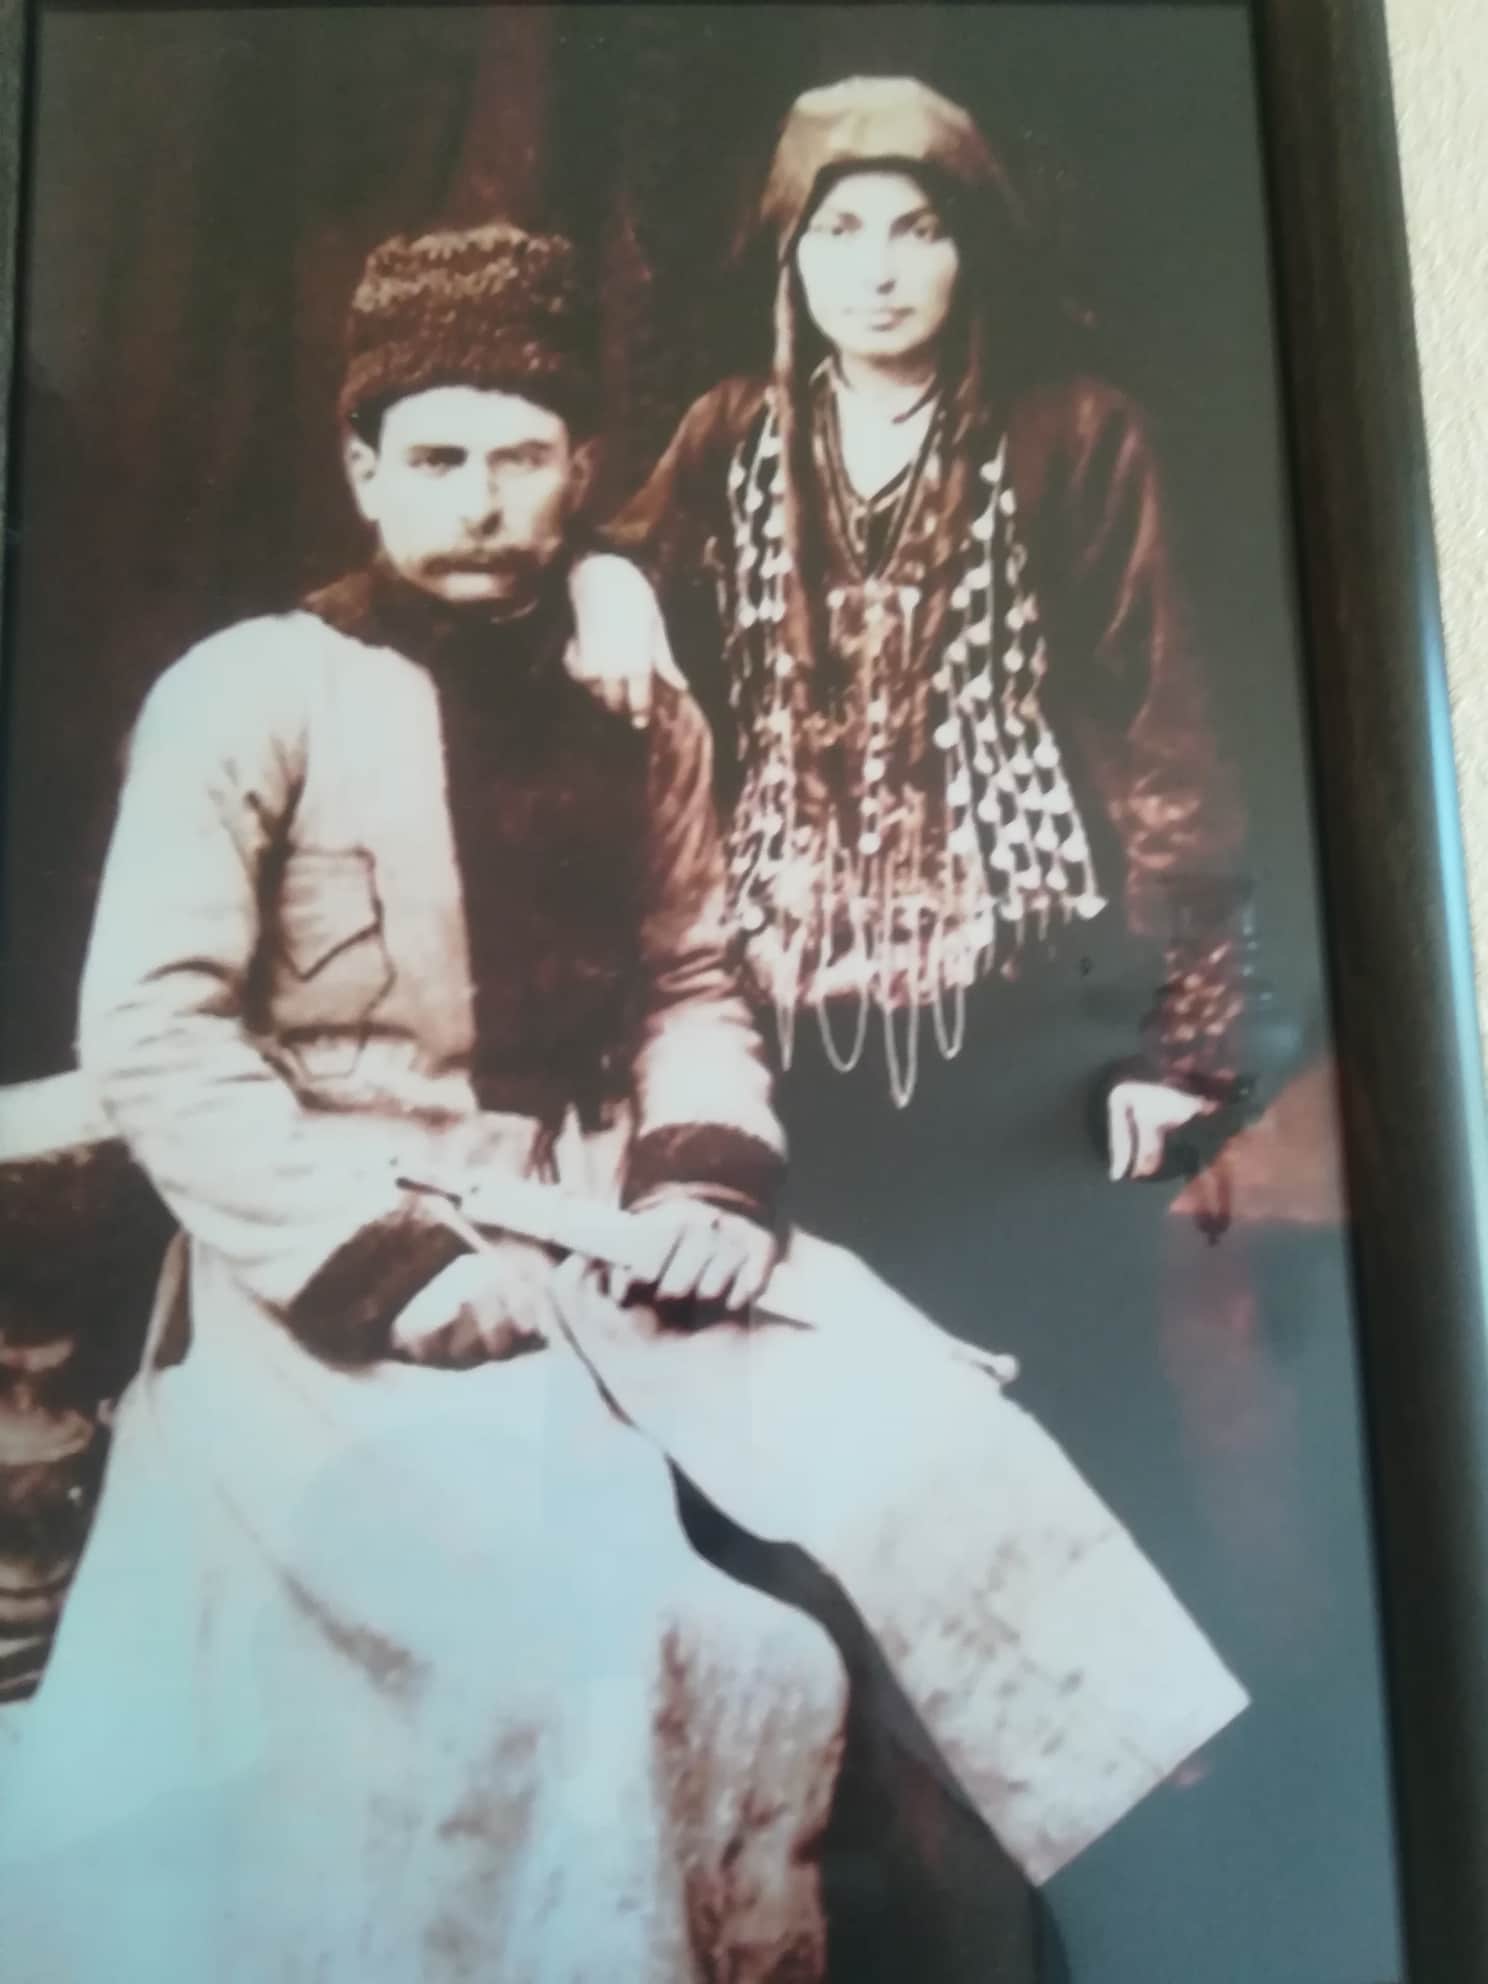 ერასტი ჯამრულიძე 1875-1962წწ გარდ. 87 წლის, თუშეთის უკანასკნელი მამასახლისი დაბ. სოფ. ხისო, ომალო, თუშეთი. 